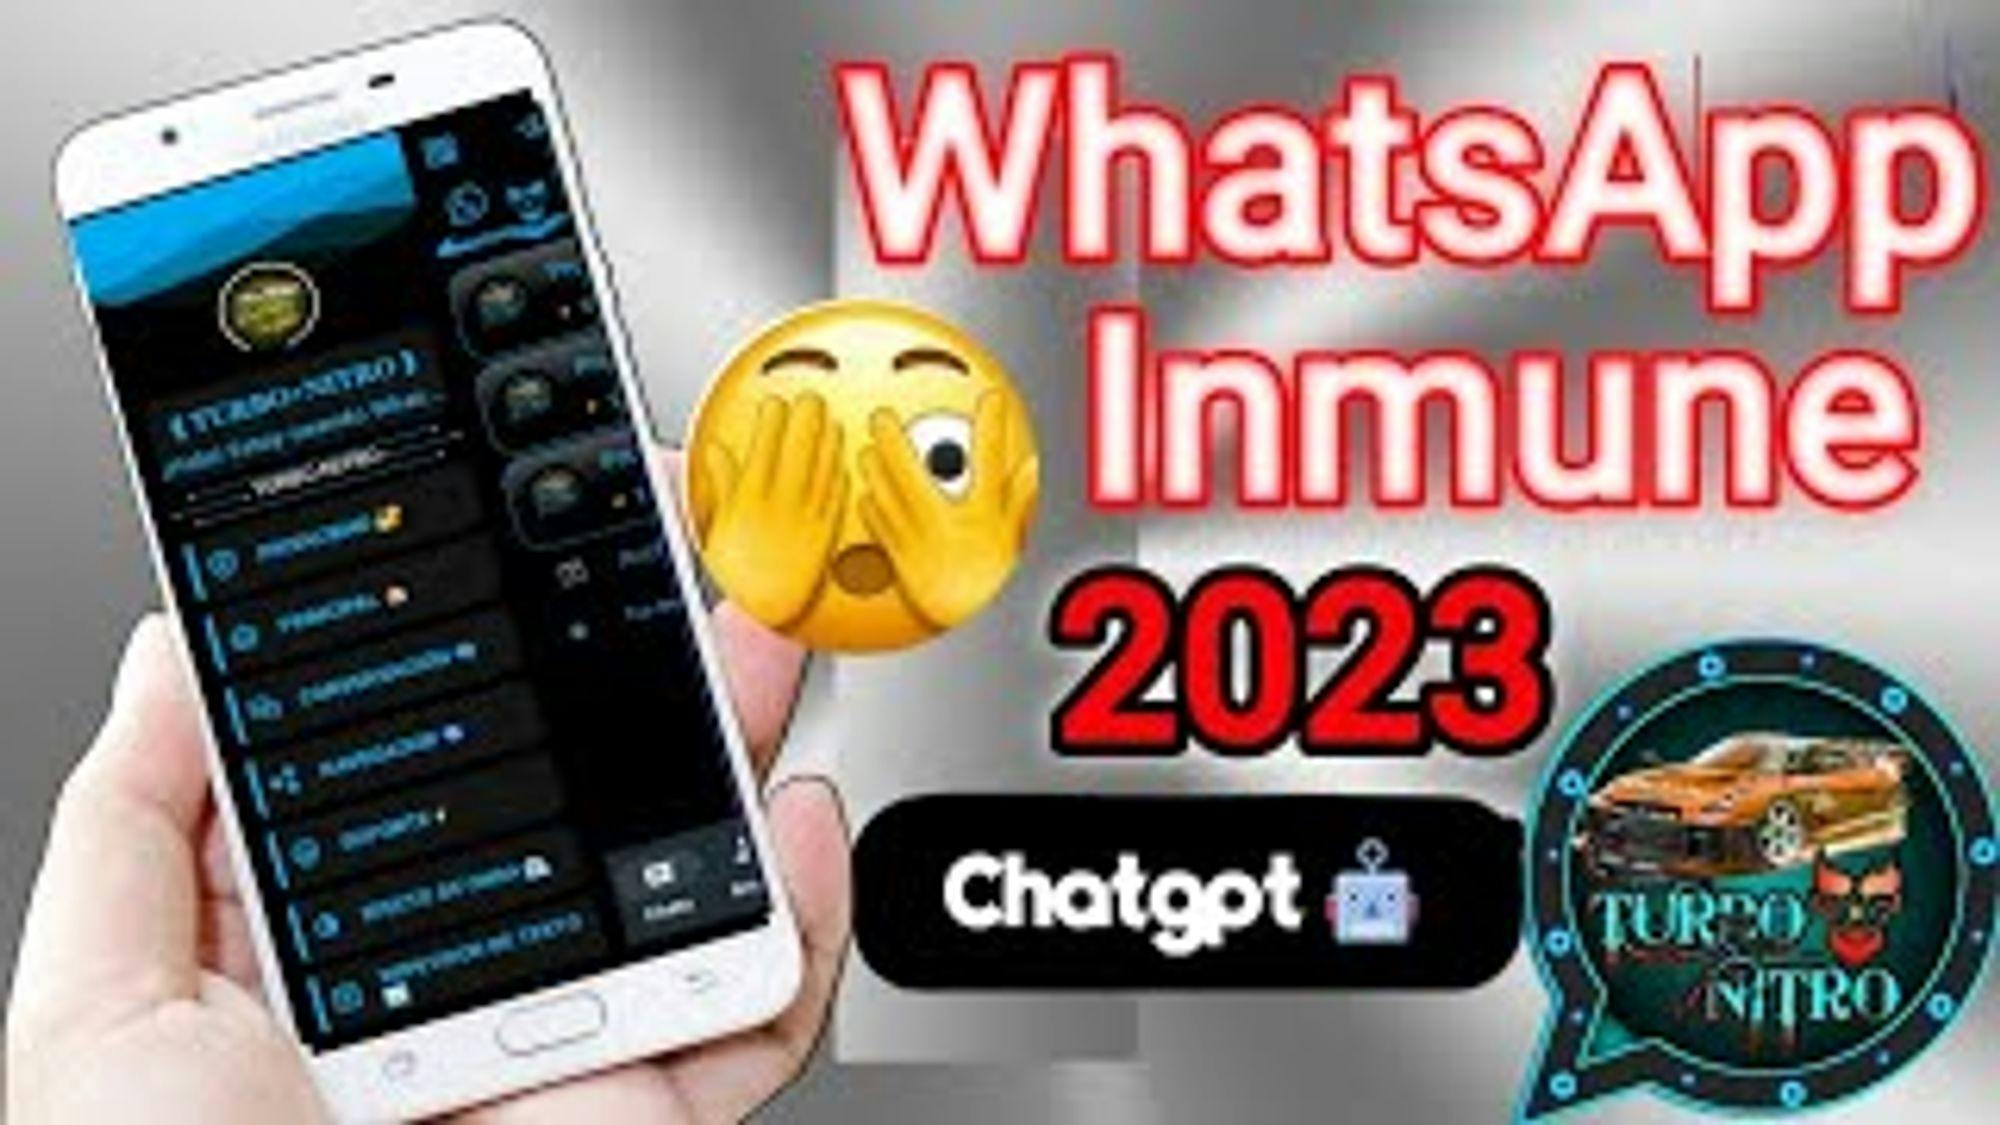 WhatsApp inmune con binarios incluidos - NUEVO WhatsApp INMUNE 2023